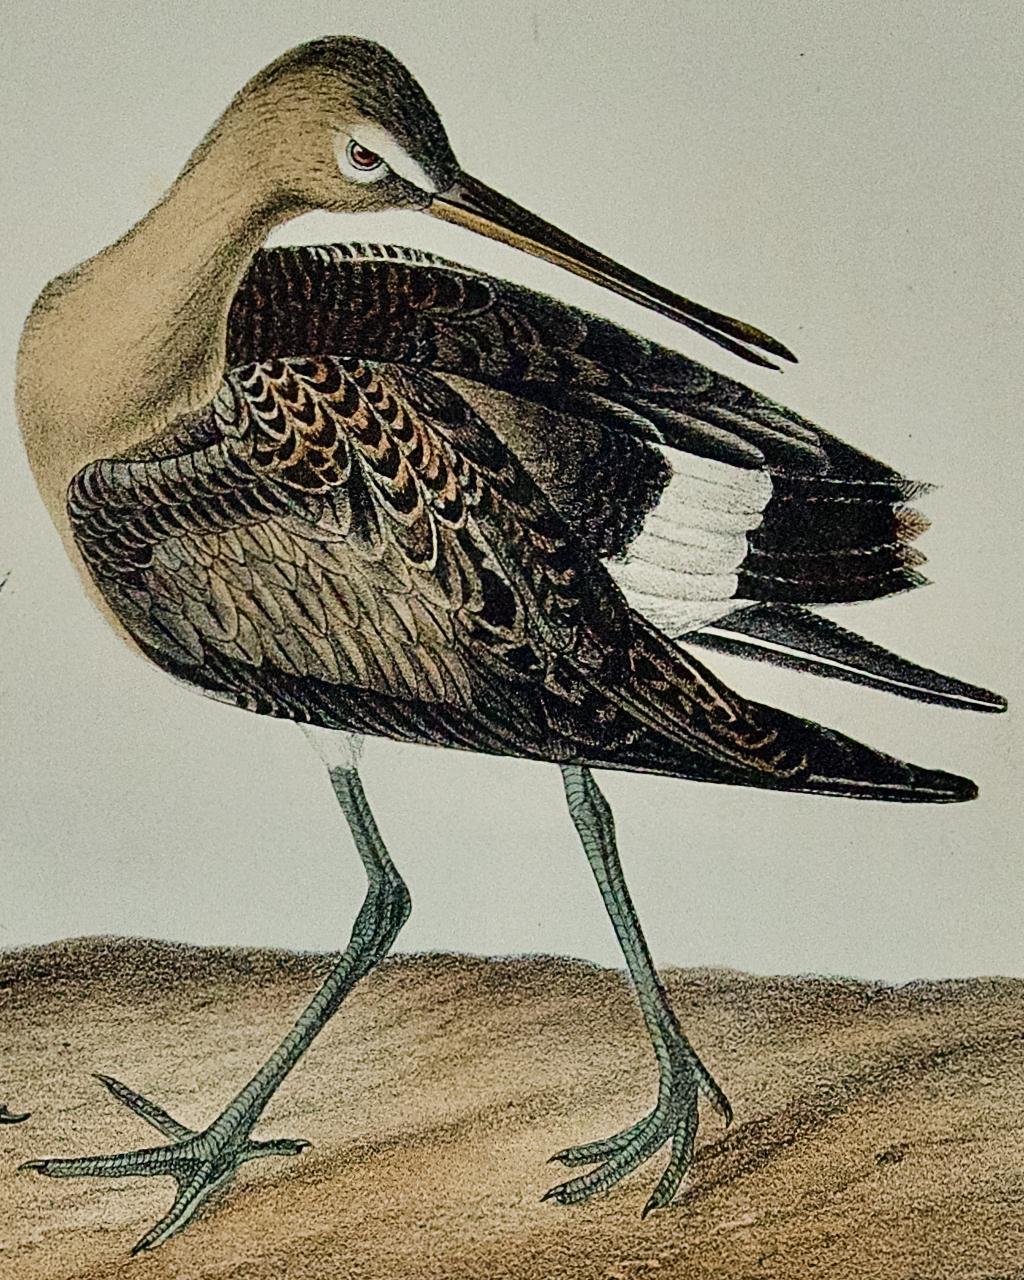 Dies ist ein Original 19. Jahrhundert John James Audubon handkolorierte 1. octavo Ausgabe Lithographie mit dem Titel 